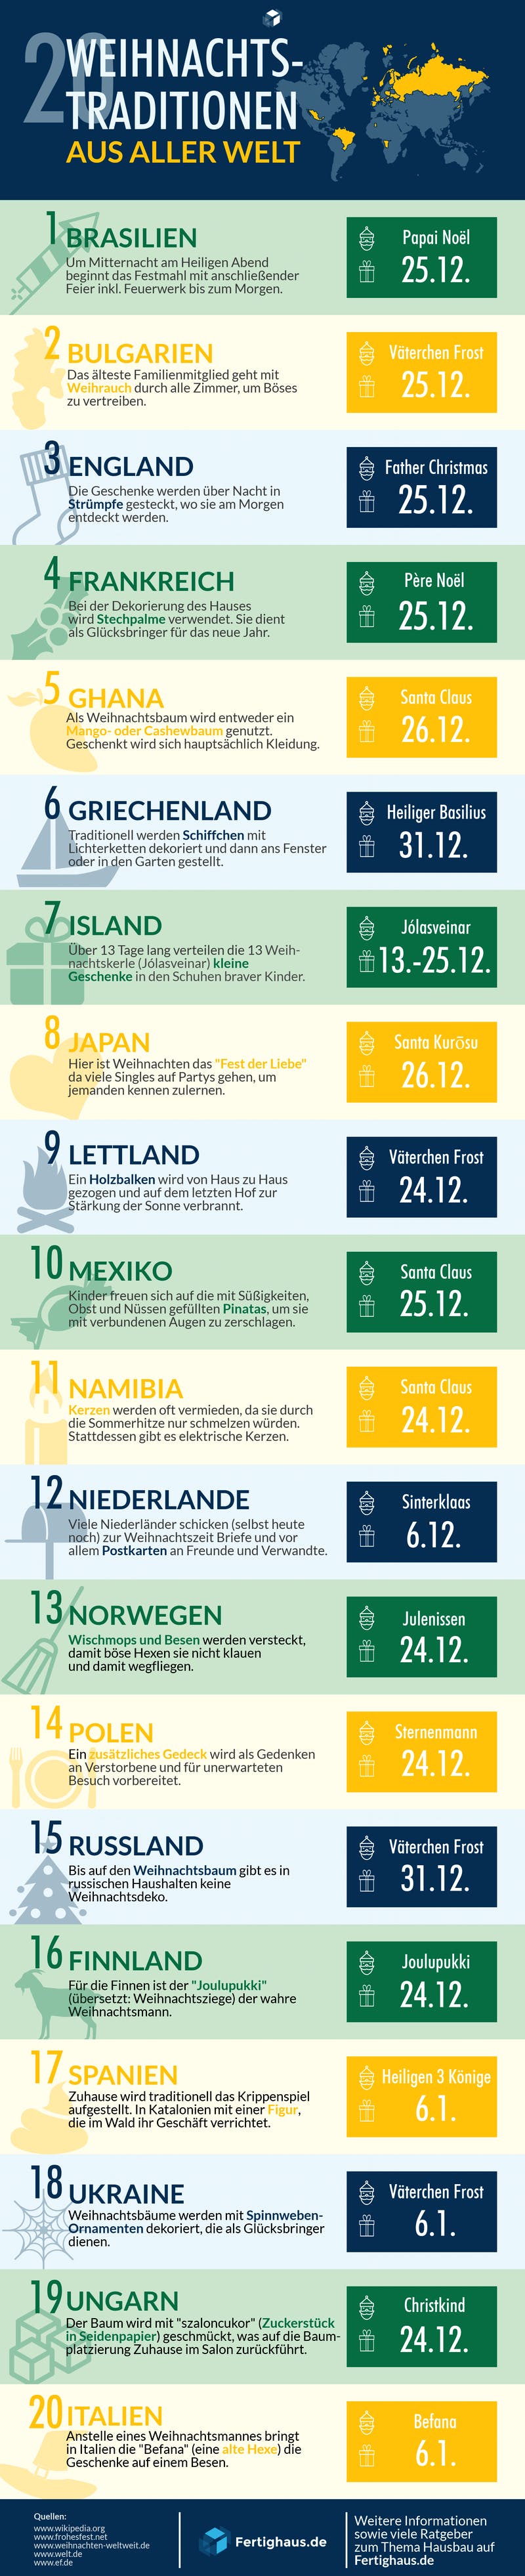 Infografik mit Weihnachtstraditionen aus 20 Ländern